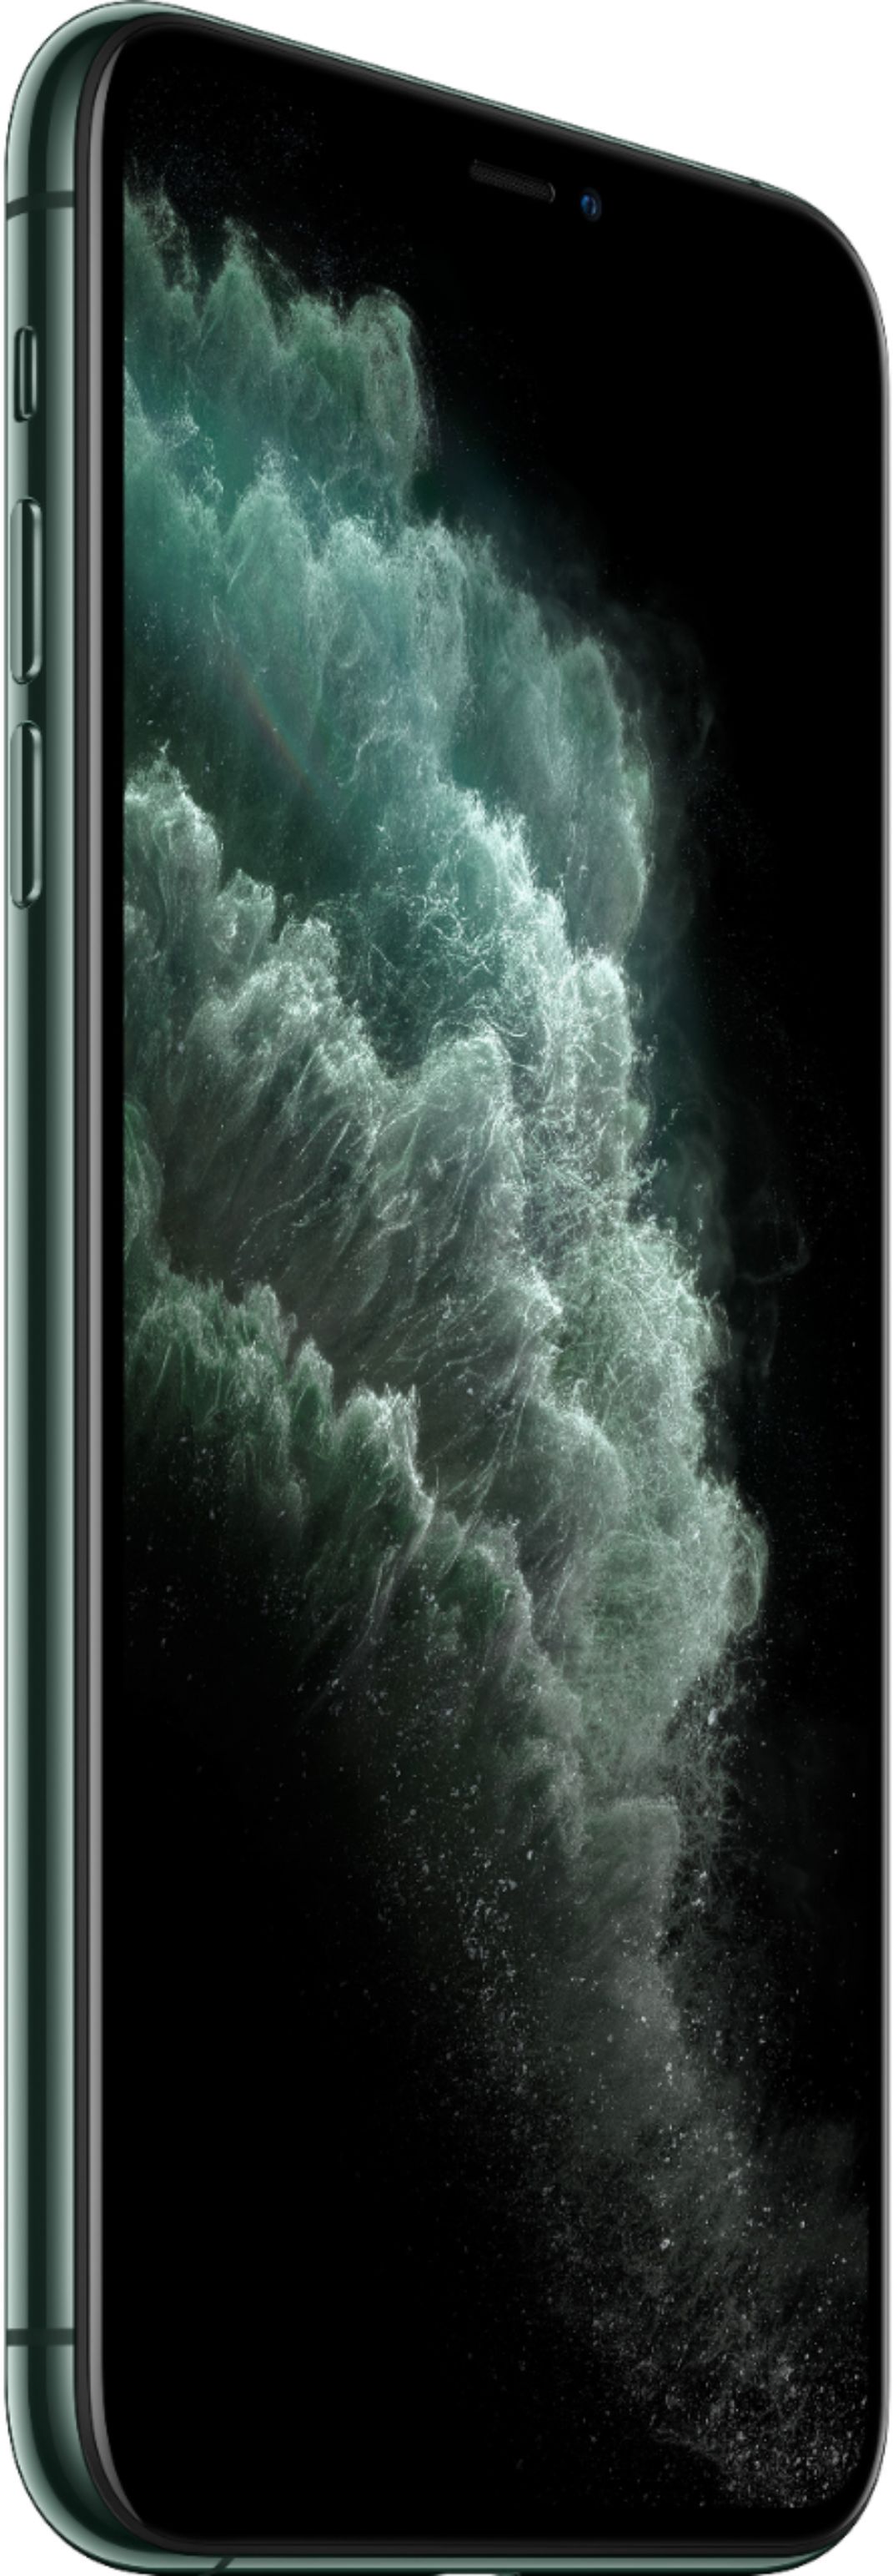 スマートフォン/携帯電話 スマートフォン本体 Best Buy: Apple iPhone 11 Pro Max 64GB Midnight Green (Verizon) MWH22LL/A